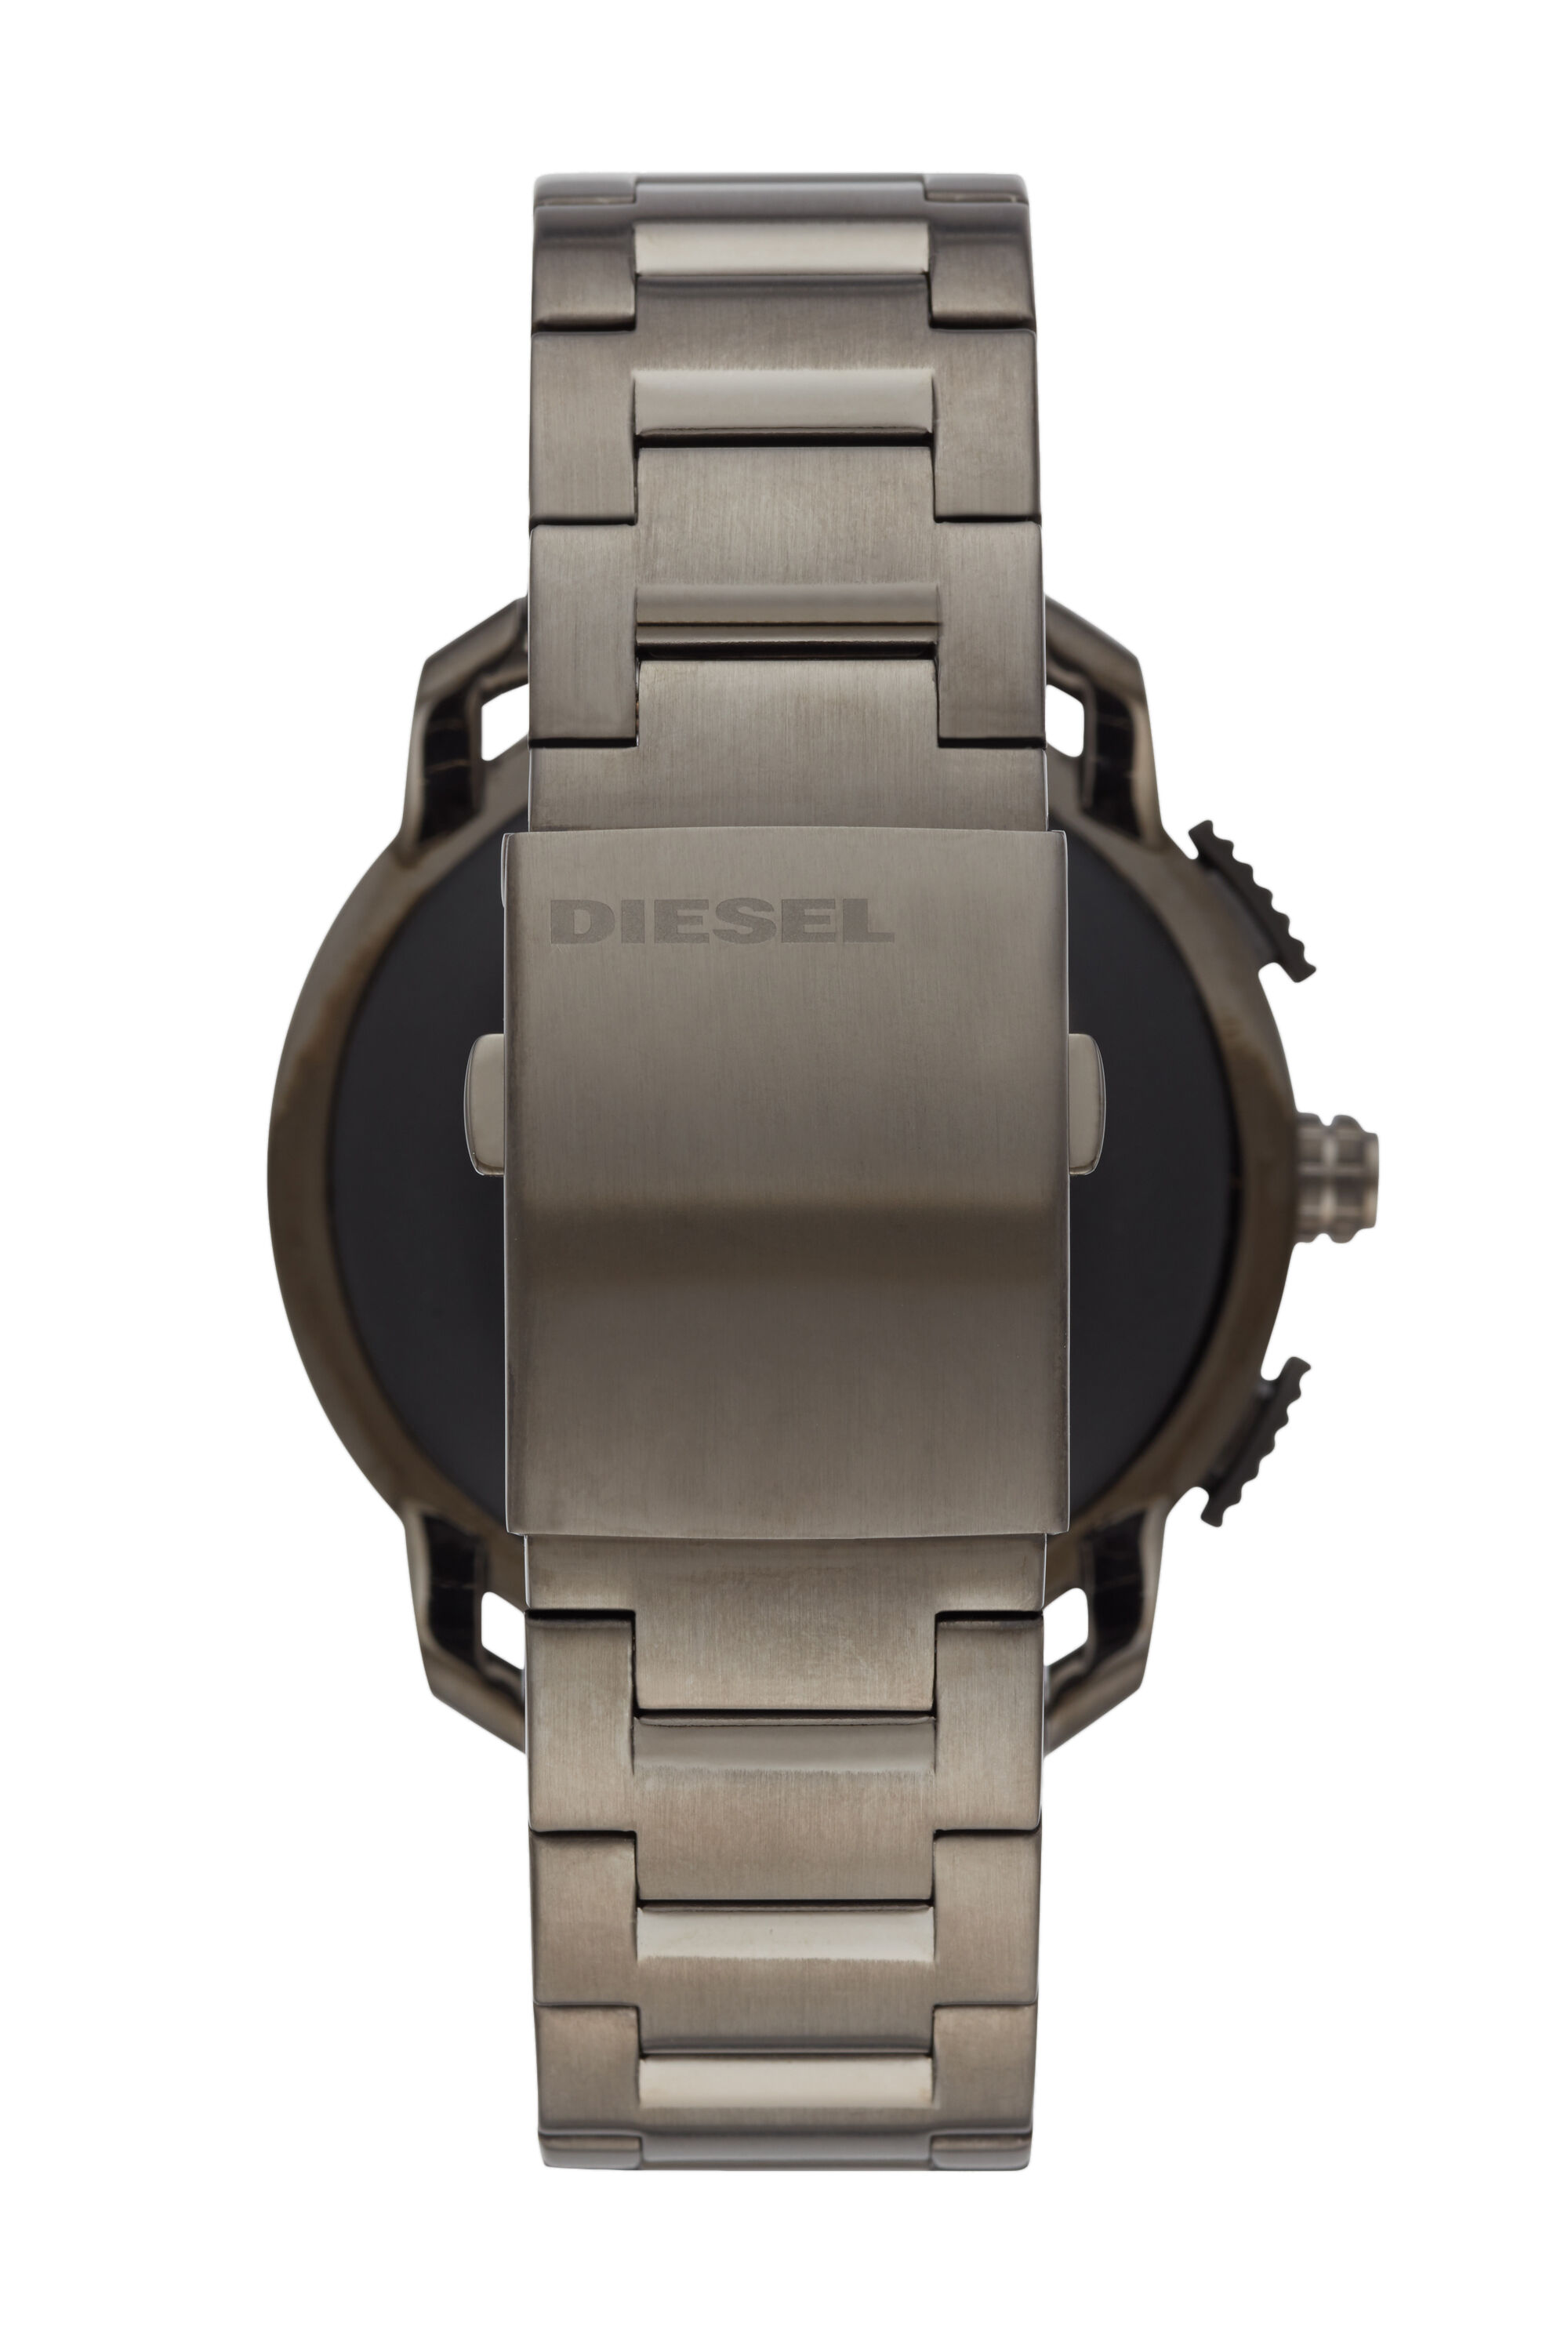 Diesel - DT2017, Dark grey - Image 2